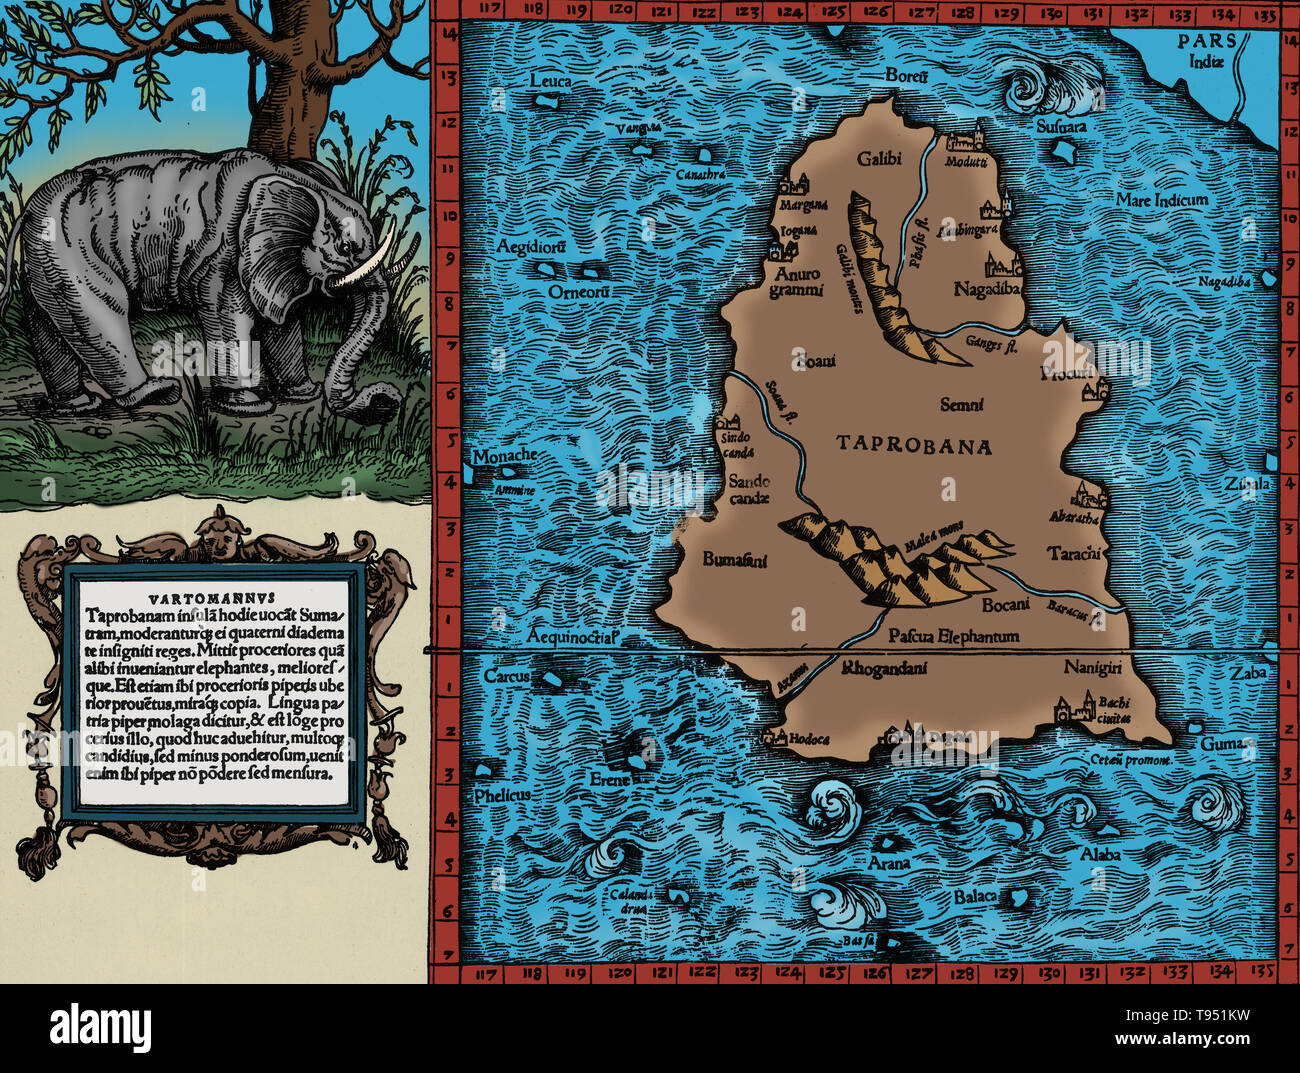 Ptolemäus Karte von Ceylon auf der Beschreibung von Ptolemäus buch Geographia enthalten, geschrieben 150 AD. Obwohl verbindlich Karten nie gefunden wurden, die geographia enthält Tausende von Referenzen zu den verschiedenen Teilen der alten Welt, mit Koordinaten für die meisten, die kartographen Ptolemäus Weltbild zu rekonstruieren, wenn das Manuskript wurde um 1300 N.CHR. entdeckt. Stockfoto